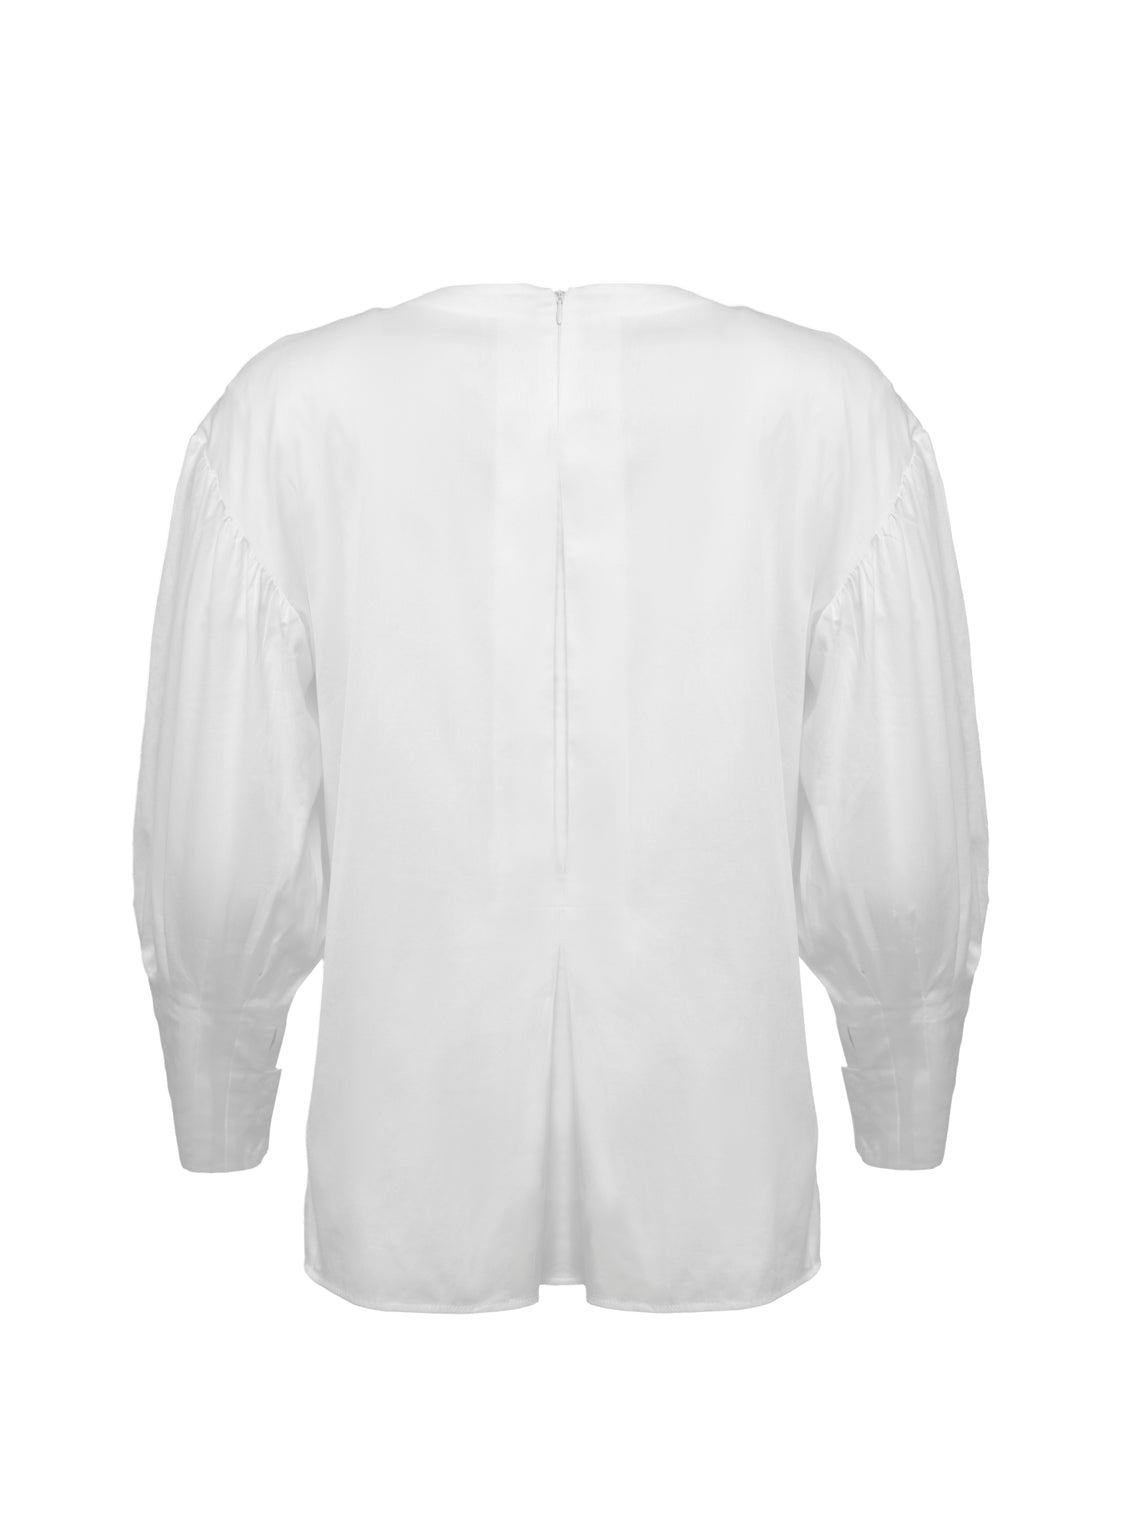 Außergewöhnliche, weiße Basic Bluse aus 100% Baumwolle mit Rundhalsausschnitt, Kellerfalte mittig und seitlichen Schlitzen